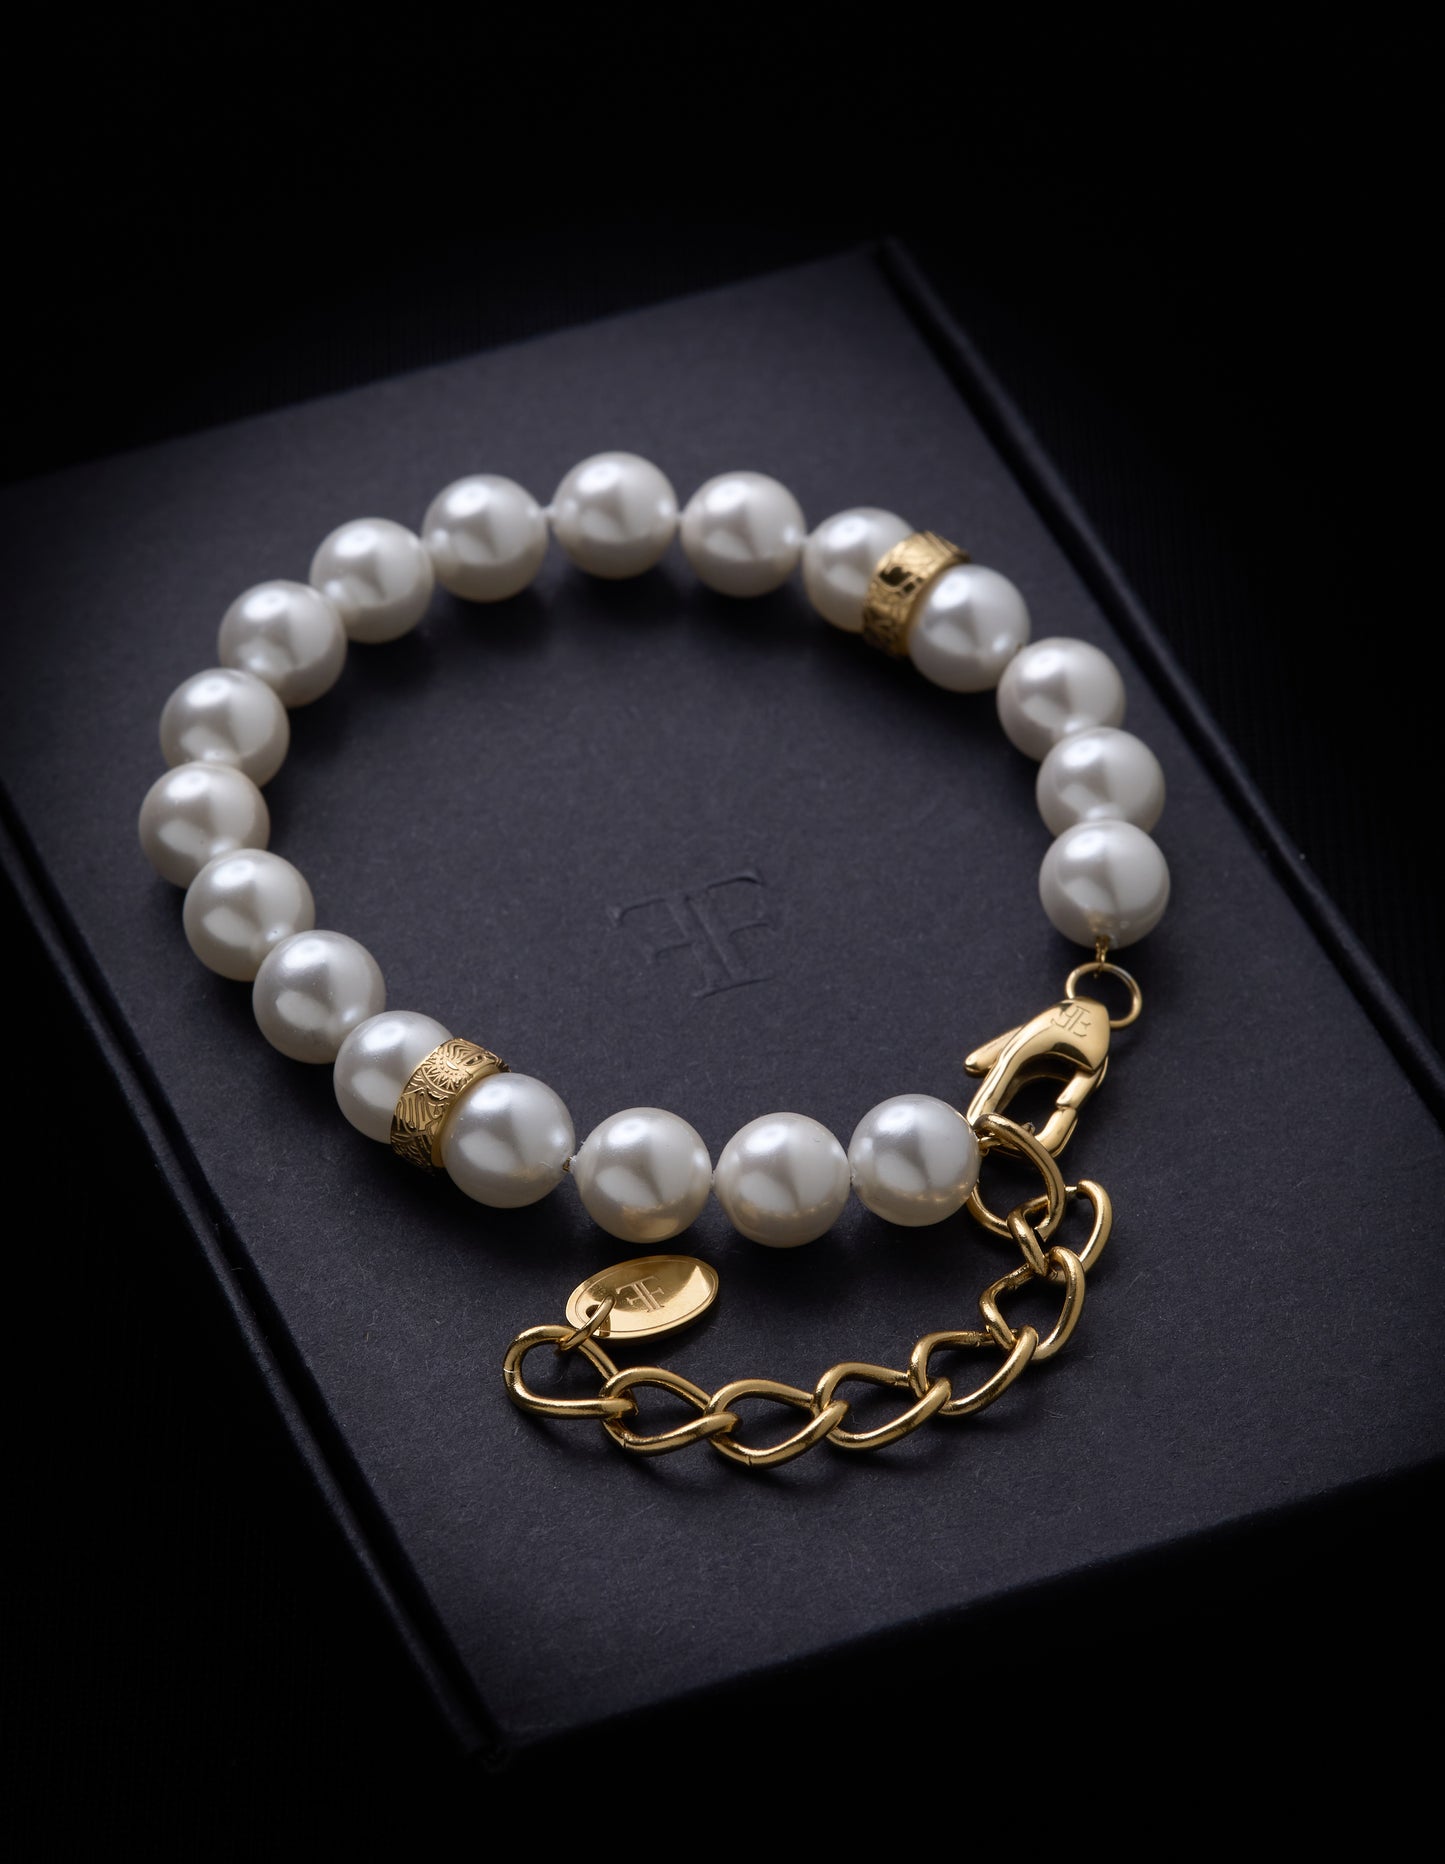 Adjustable Shell Pearl Bracelet - 18K Gold-Plated